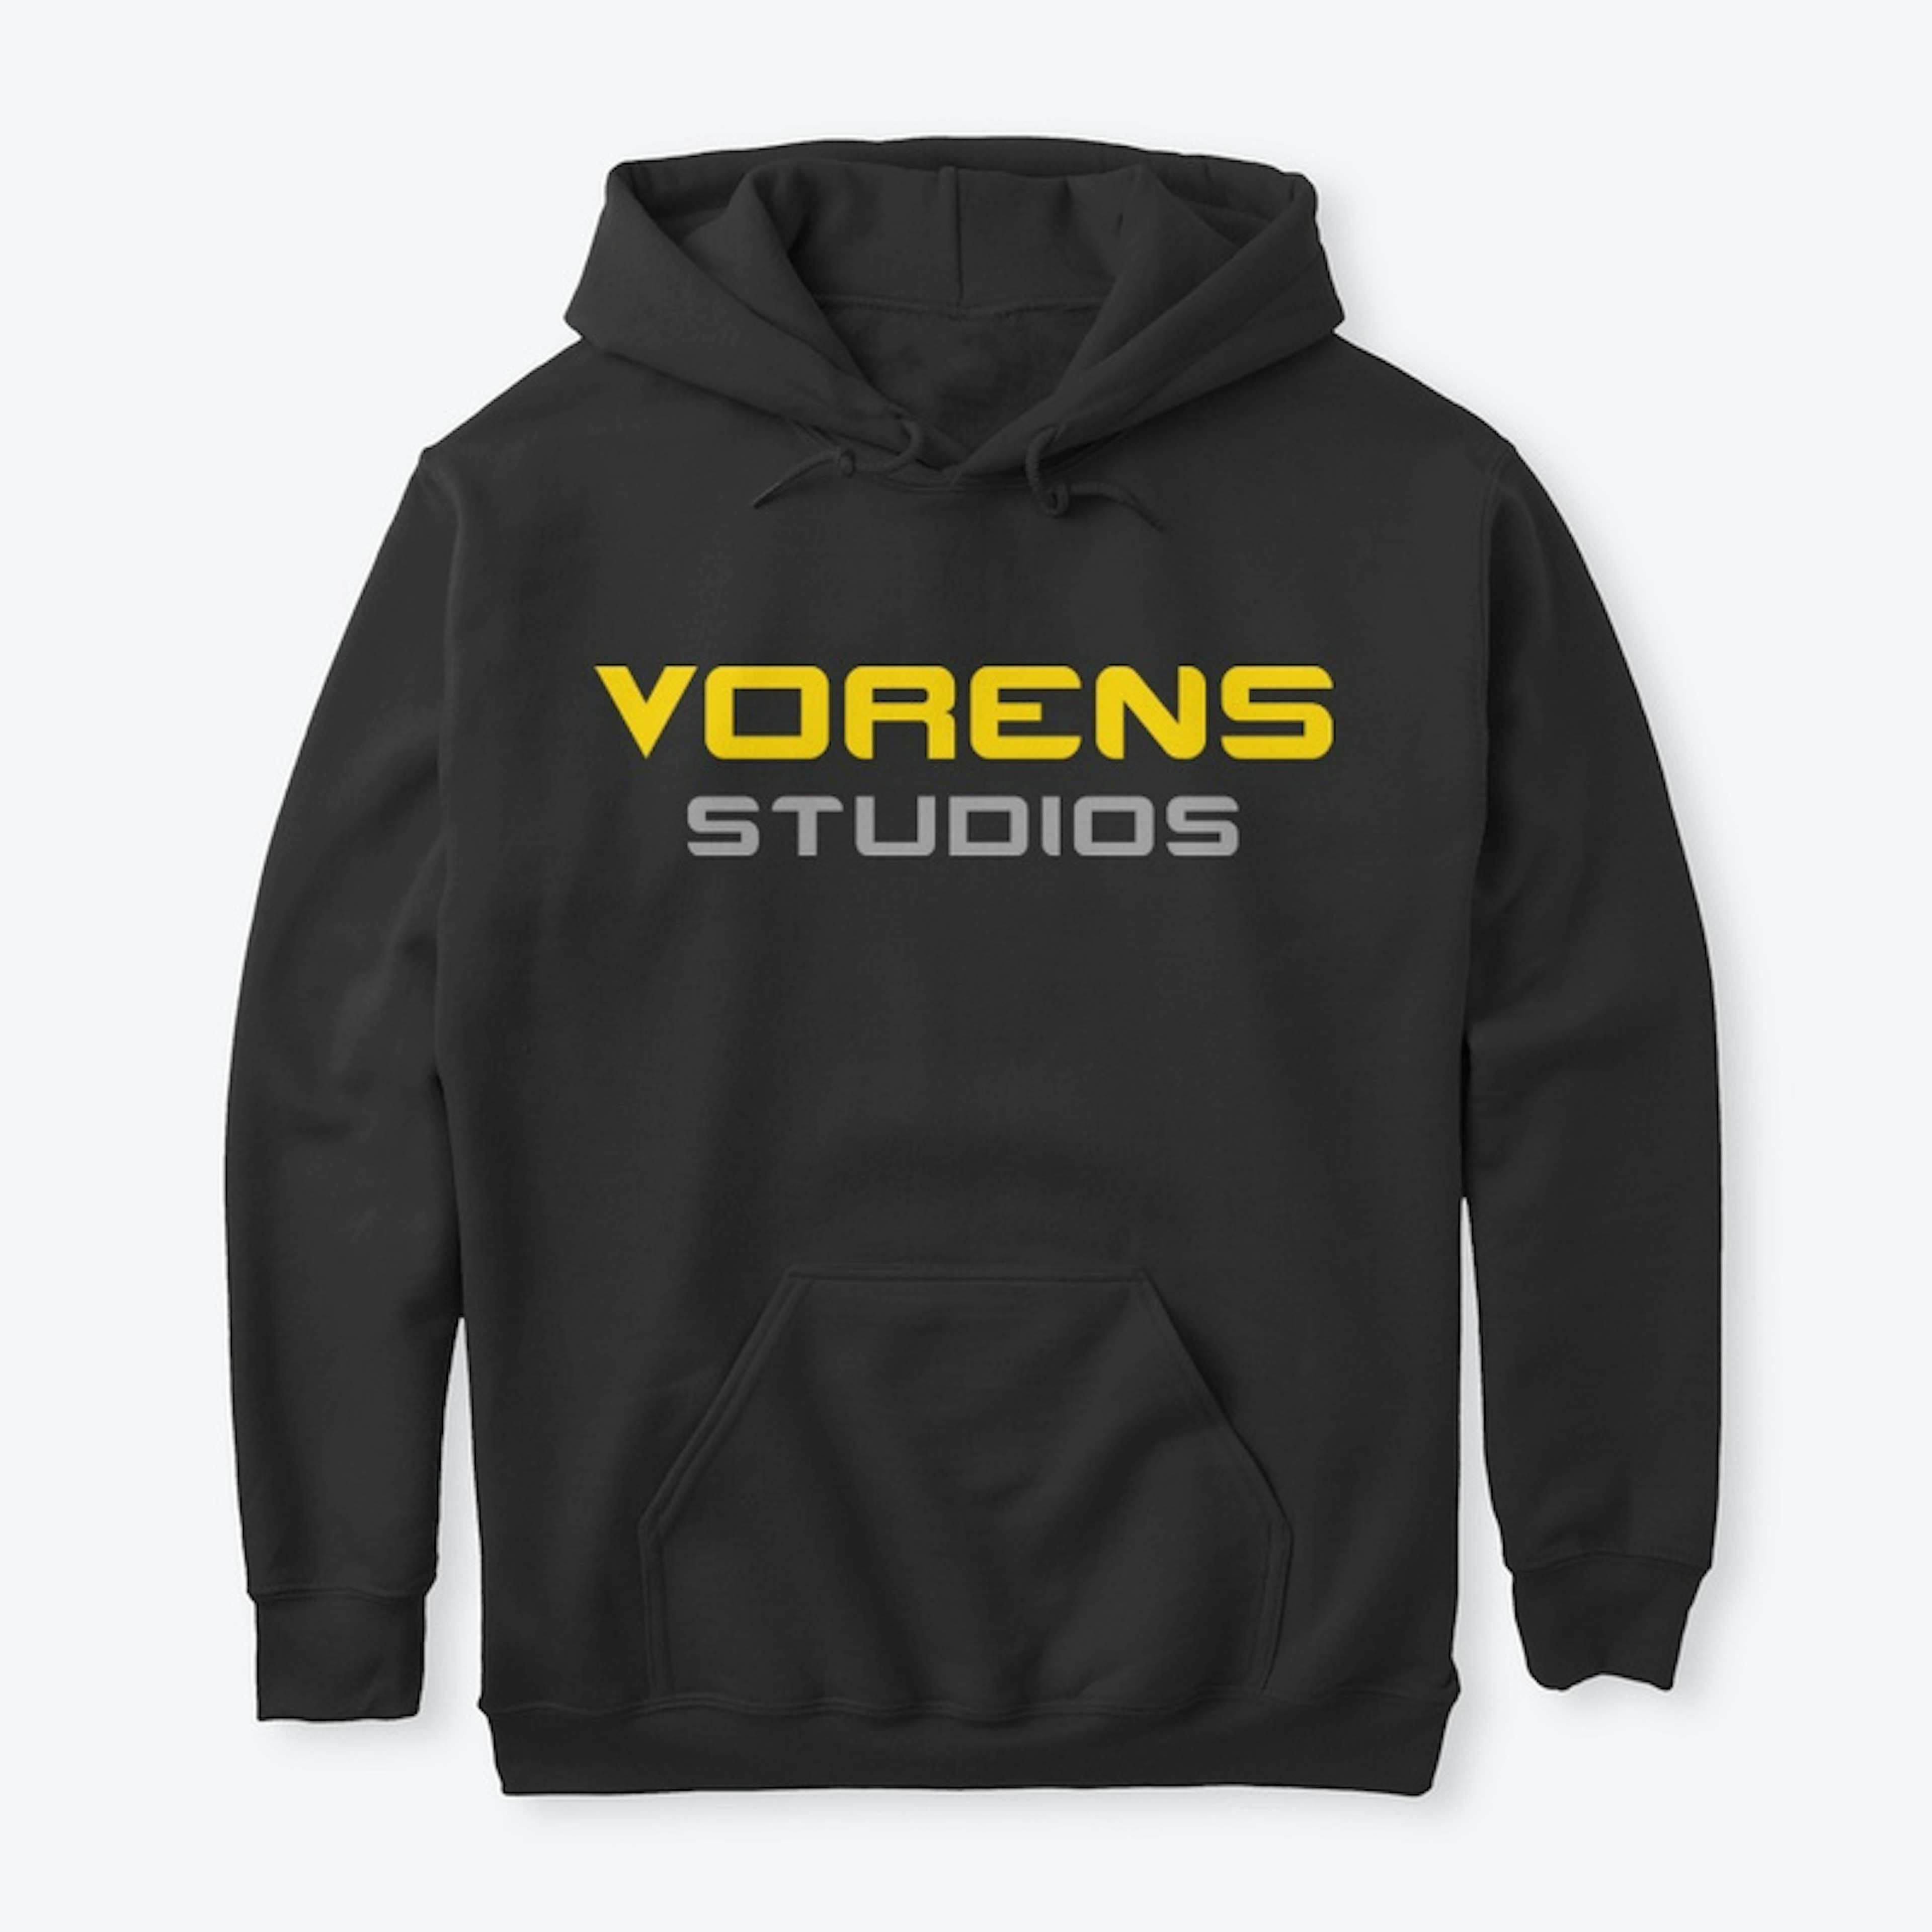 Design IV - Vorens Studios